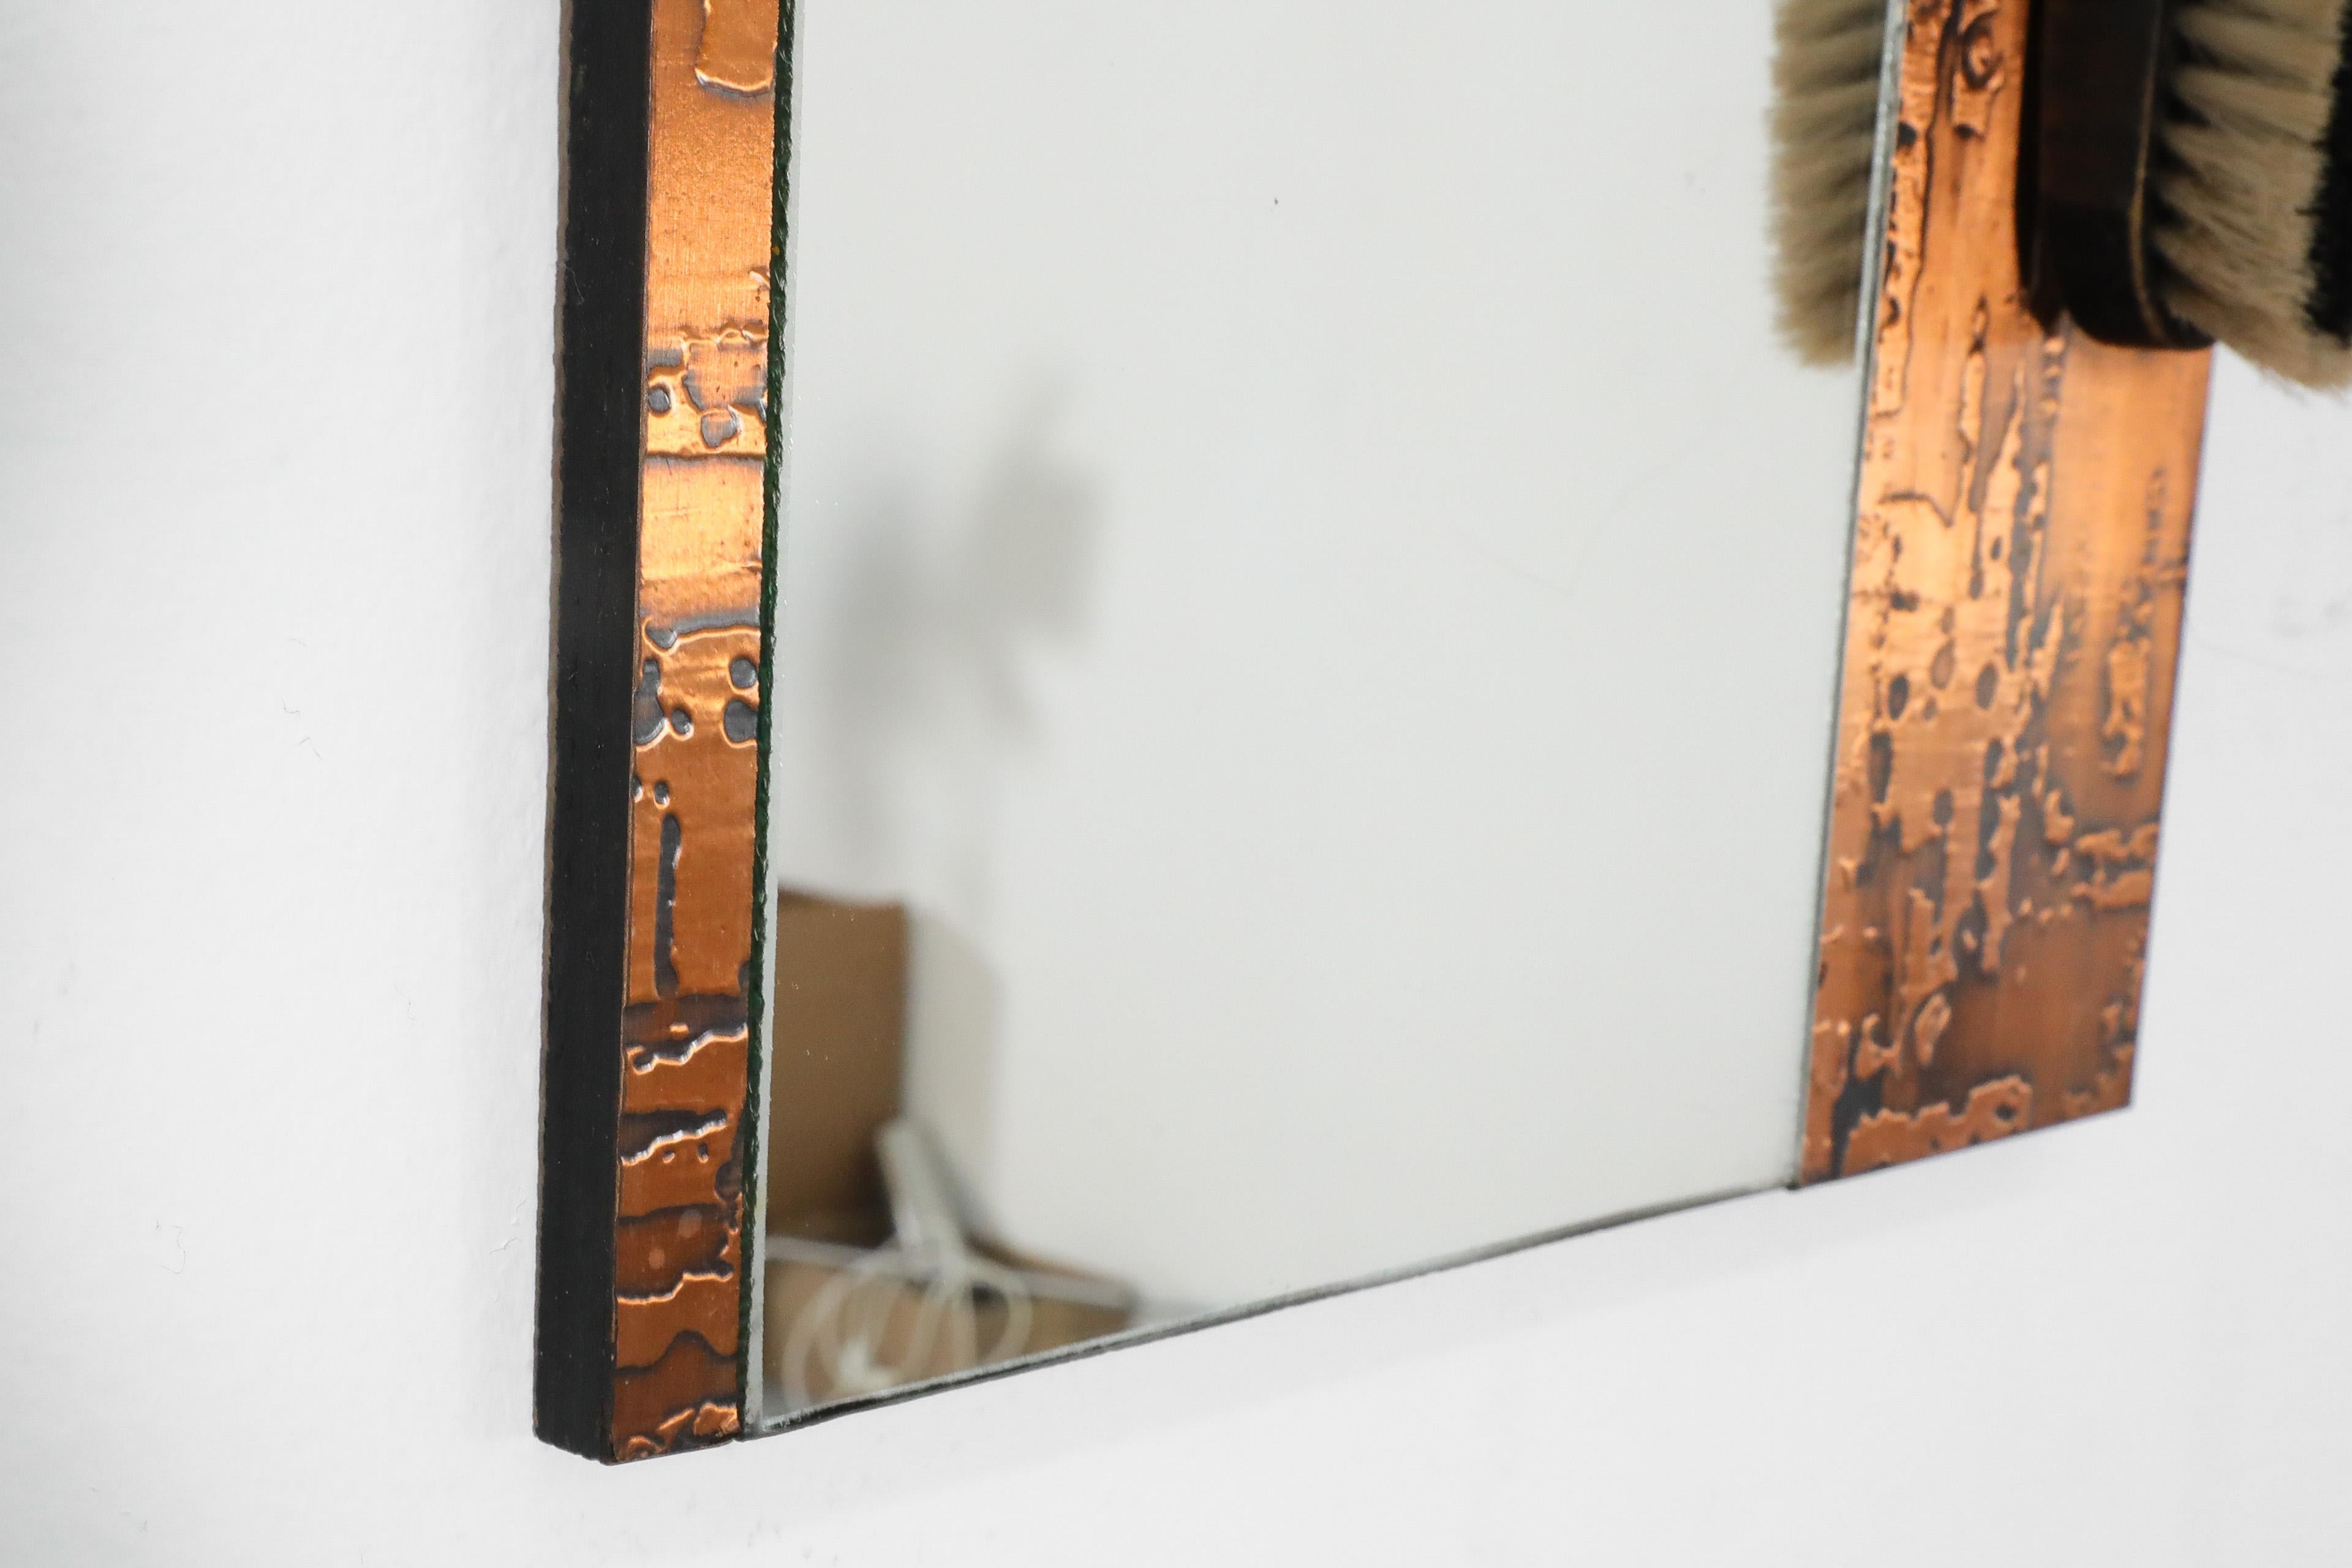 1970s, Santambrogio & De Berti styl Wall Mount Copper Butler's Mirror with Brush For Sale 3